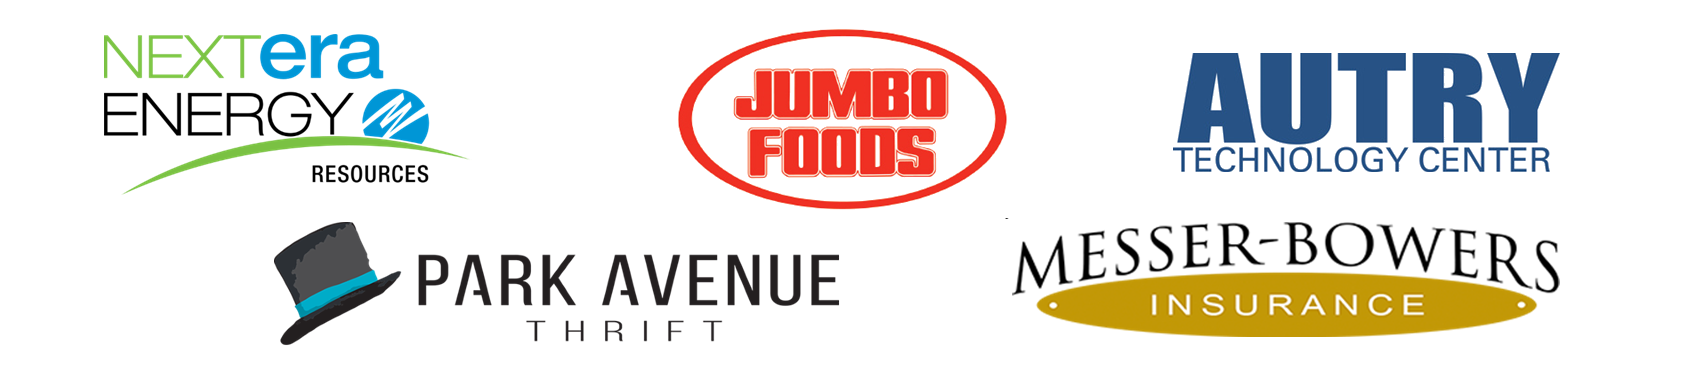 NextEra, Jumbo Foods, Autry Technology Center, Park Avenue Thrift, Messer Bowers